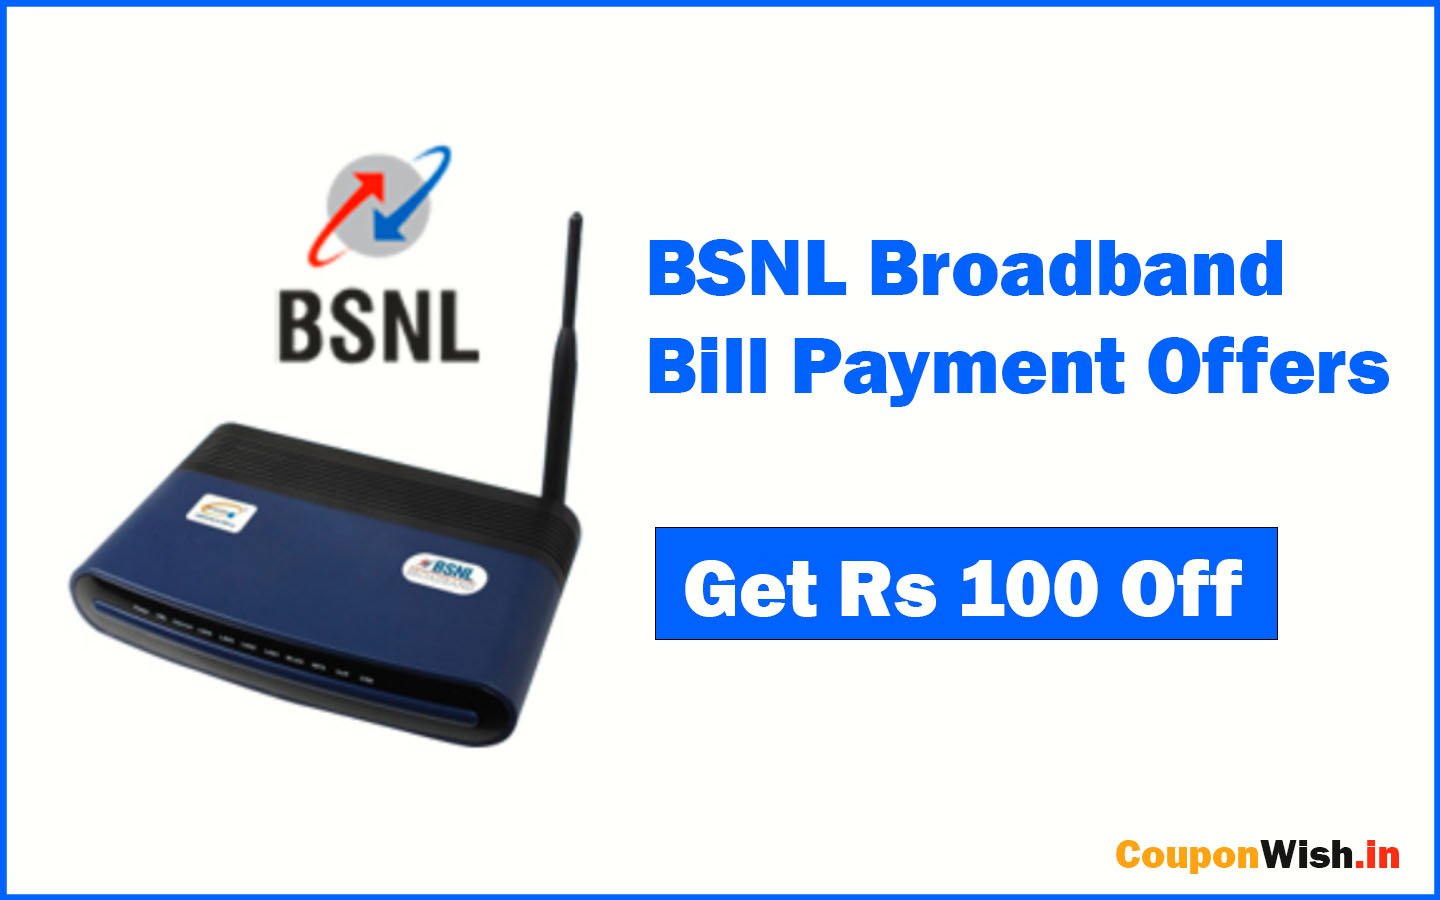 BSNL Broadband Bill Payment Offers